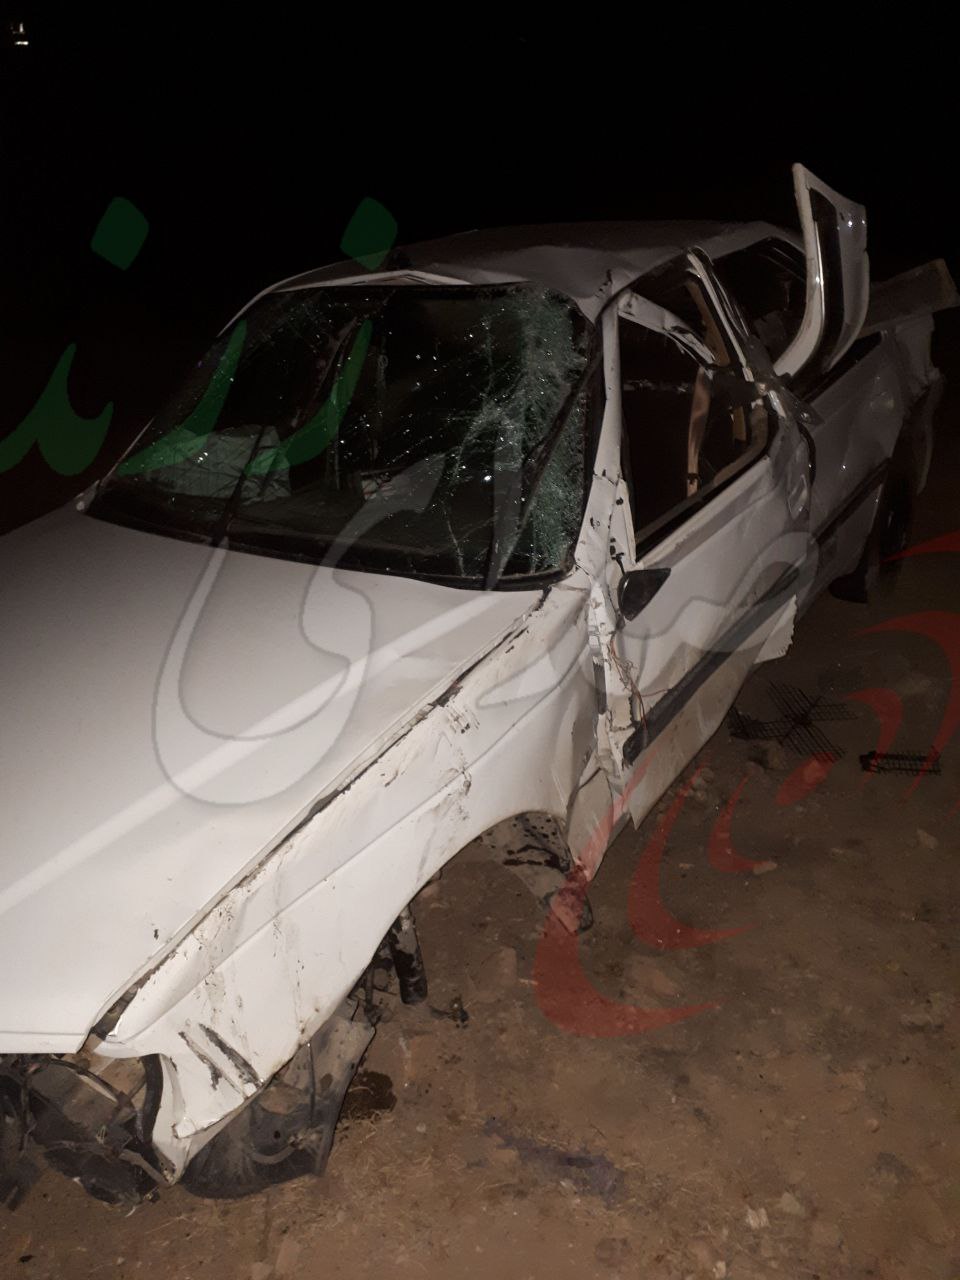 کشته شدن زوج جوان زرندی در پی واژگونی خودرو در محور ریحانشهر – داهوئیه (+عکس)